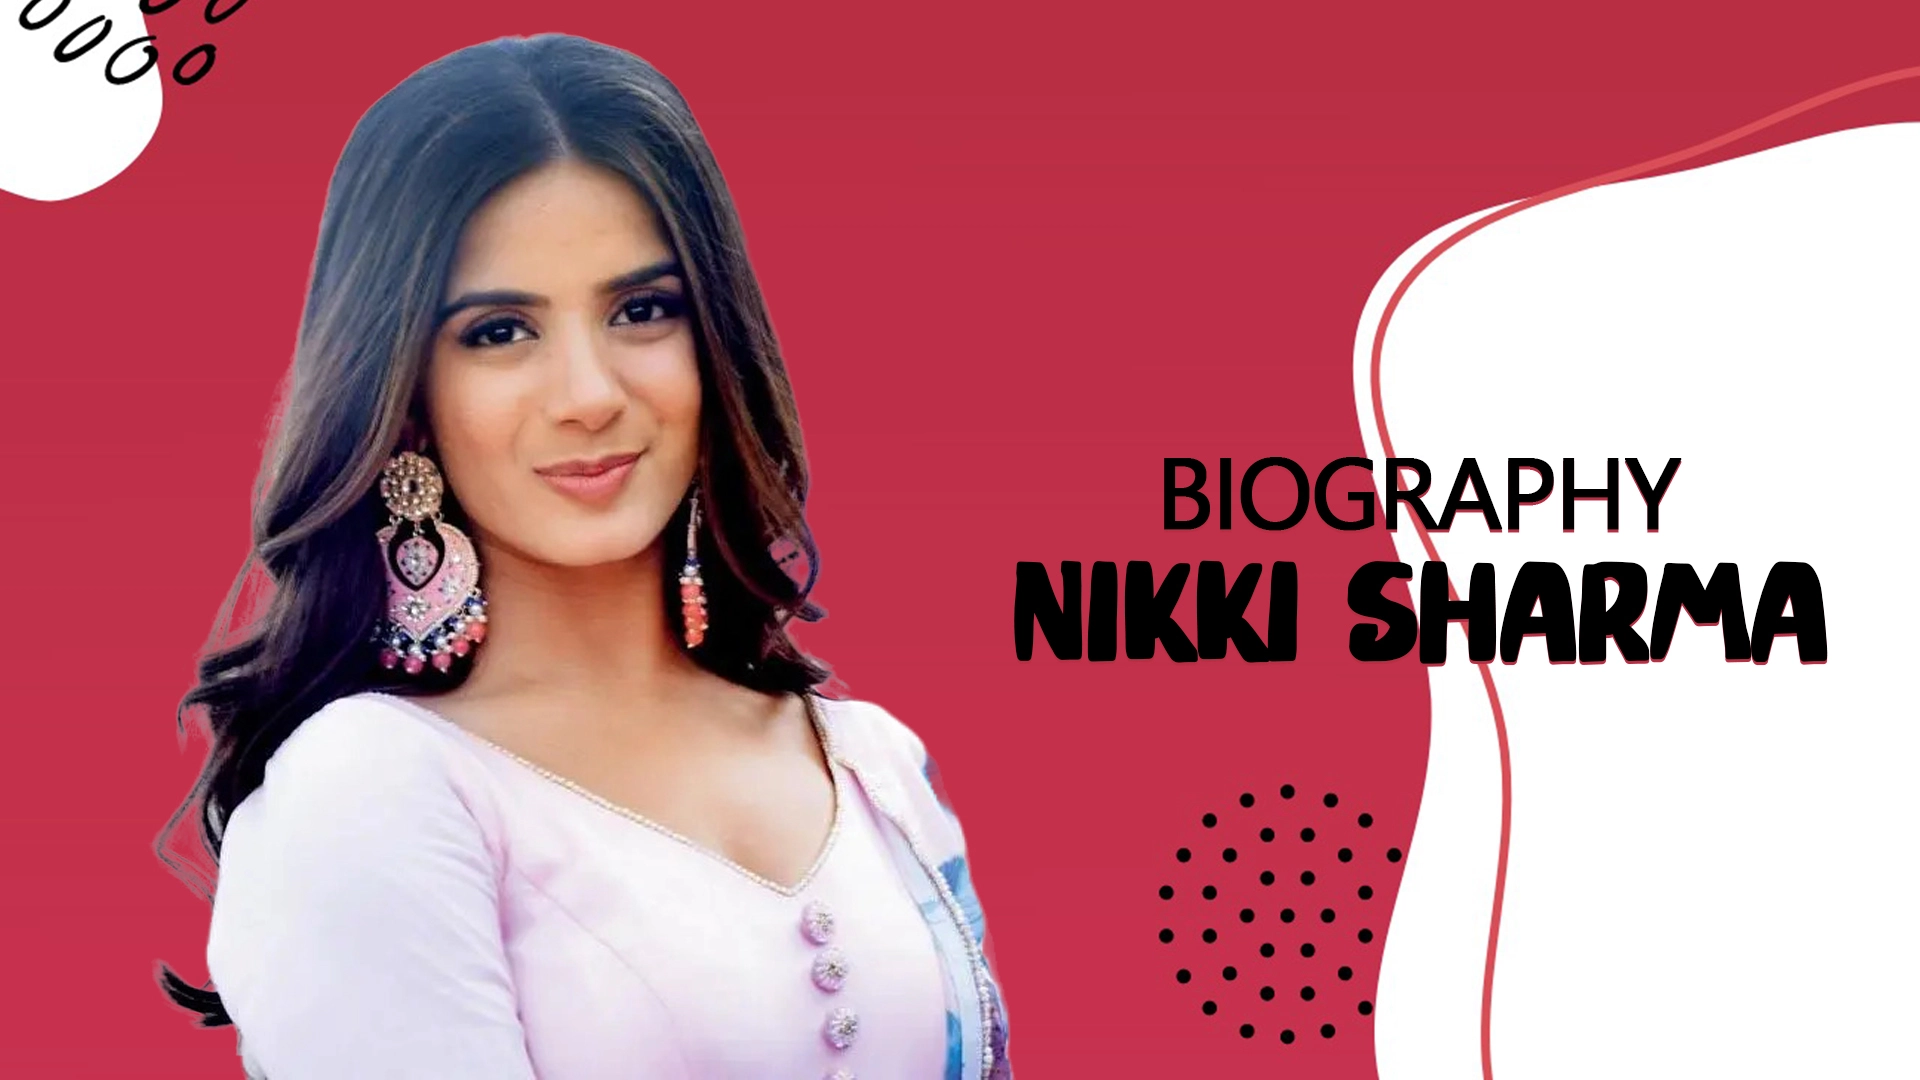 Nikki Sharma Biography in Hindi